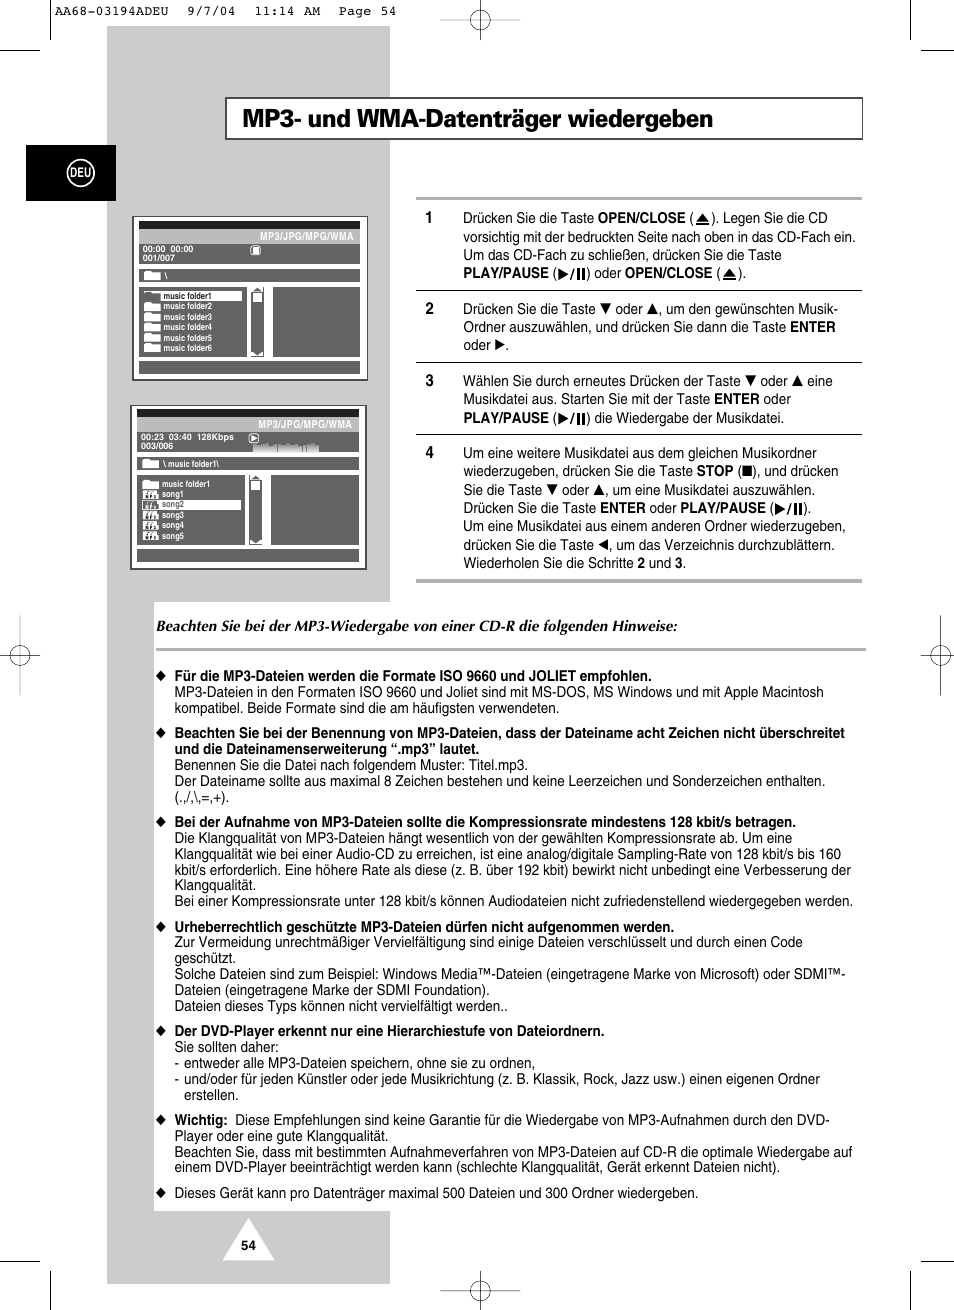 Mp3- und wma-datenträger wiedergeben | Samsung UW21J10VD Benutzerhandbuch | Seite 54 / 82